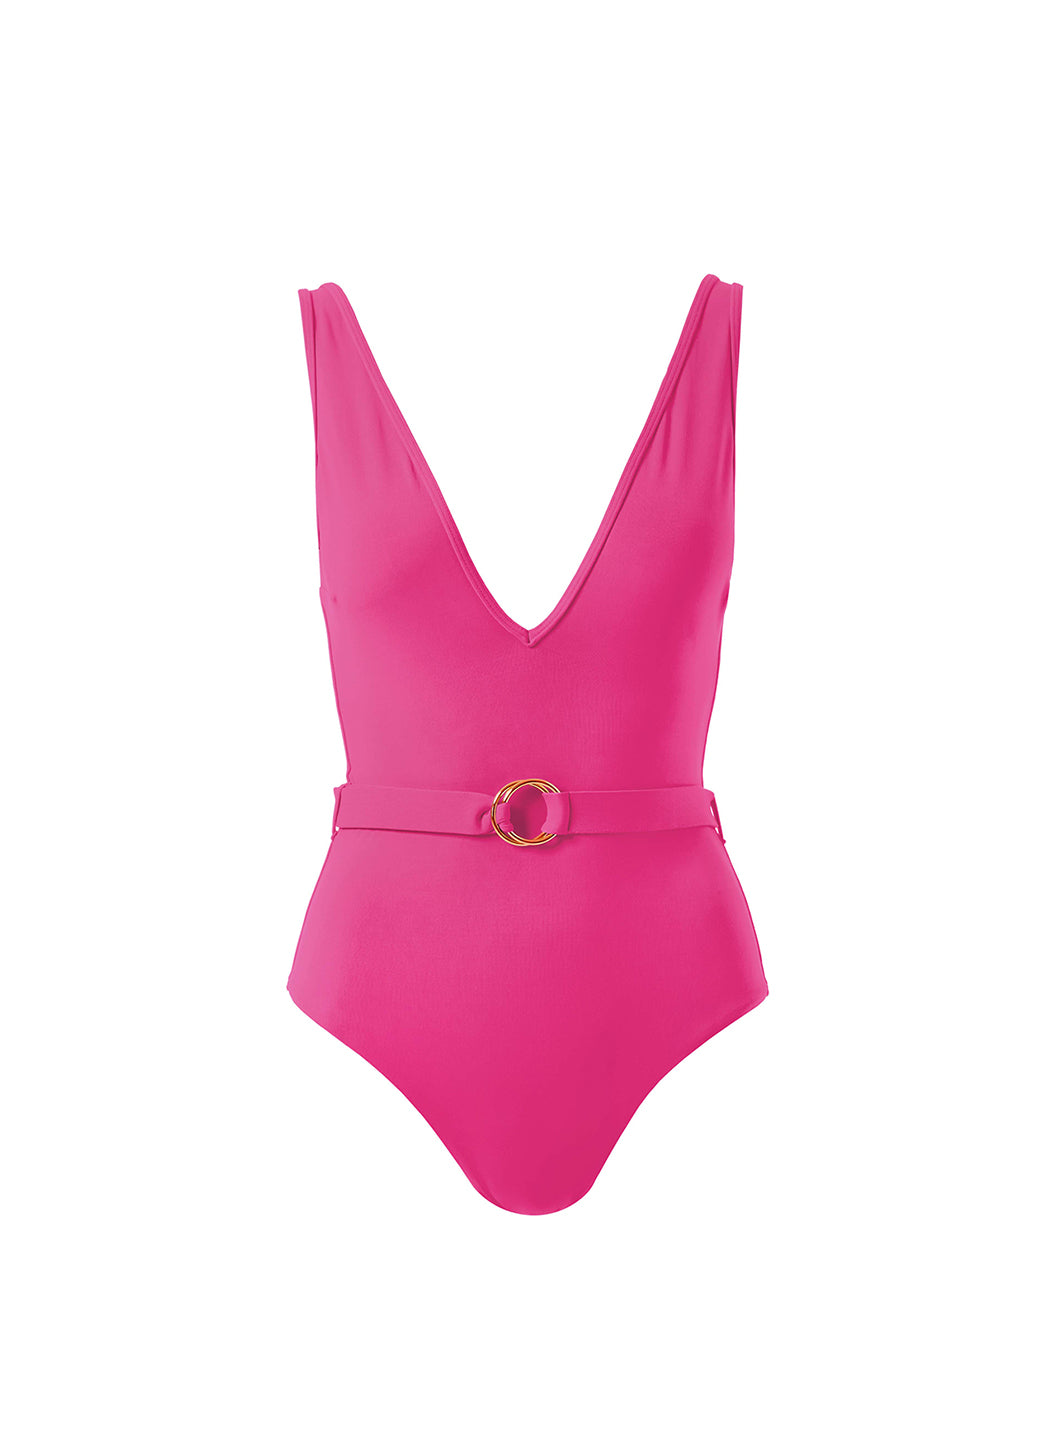 Melissa Odabash Exclusive Belize Hot Pink V-Neck Belted Swimsuit